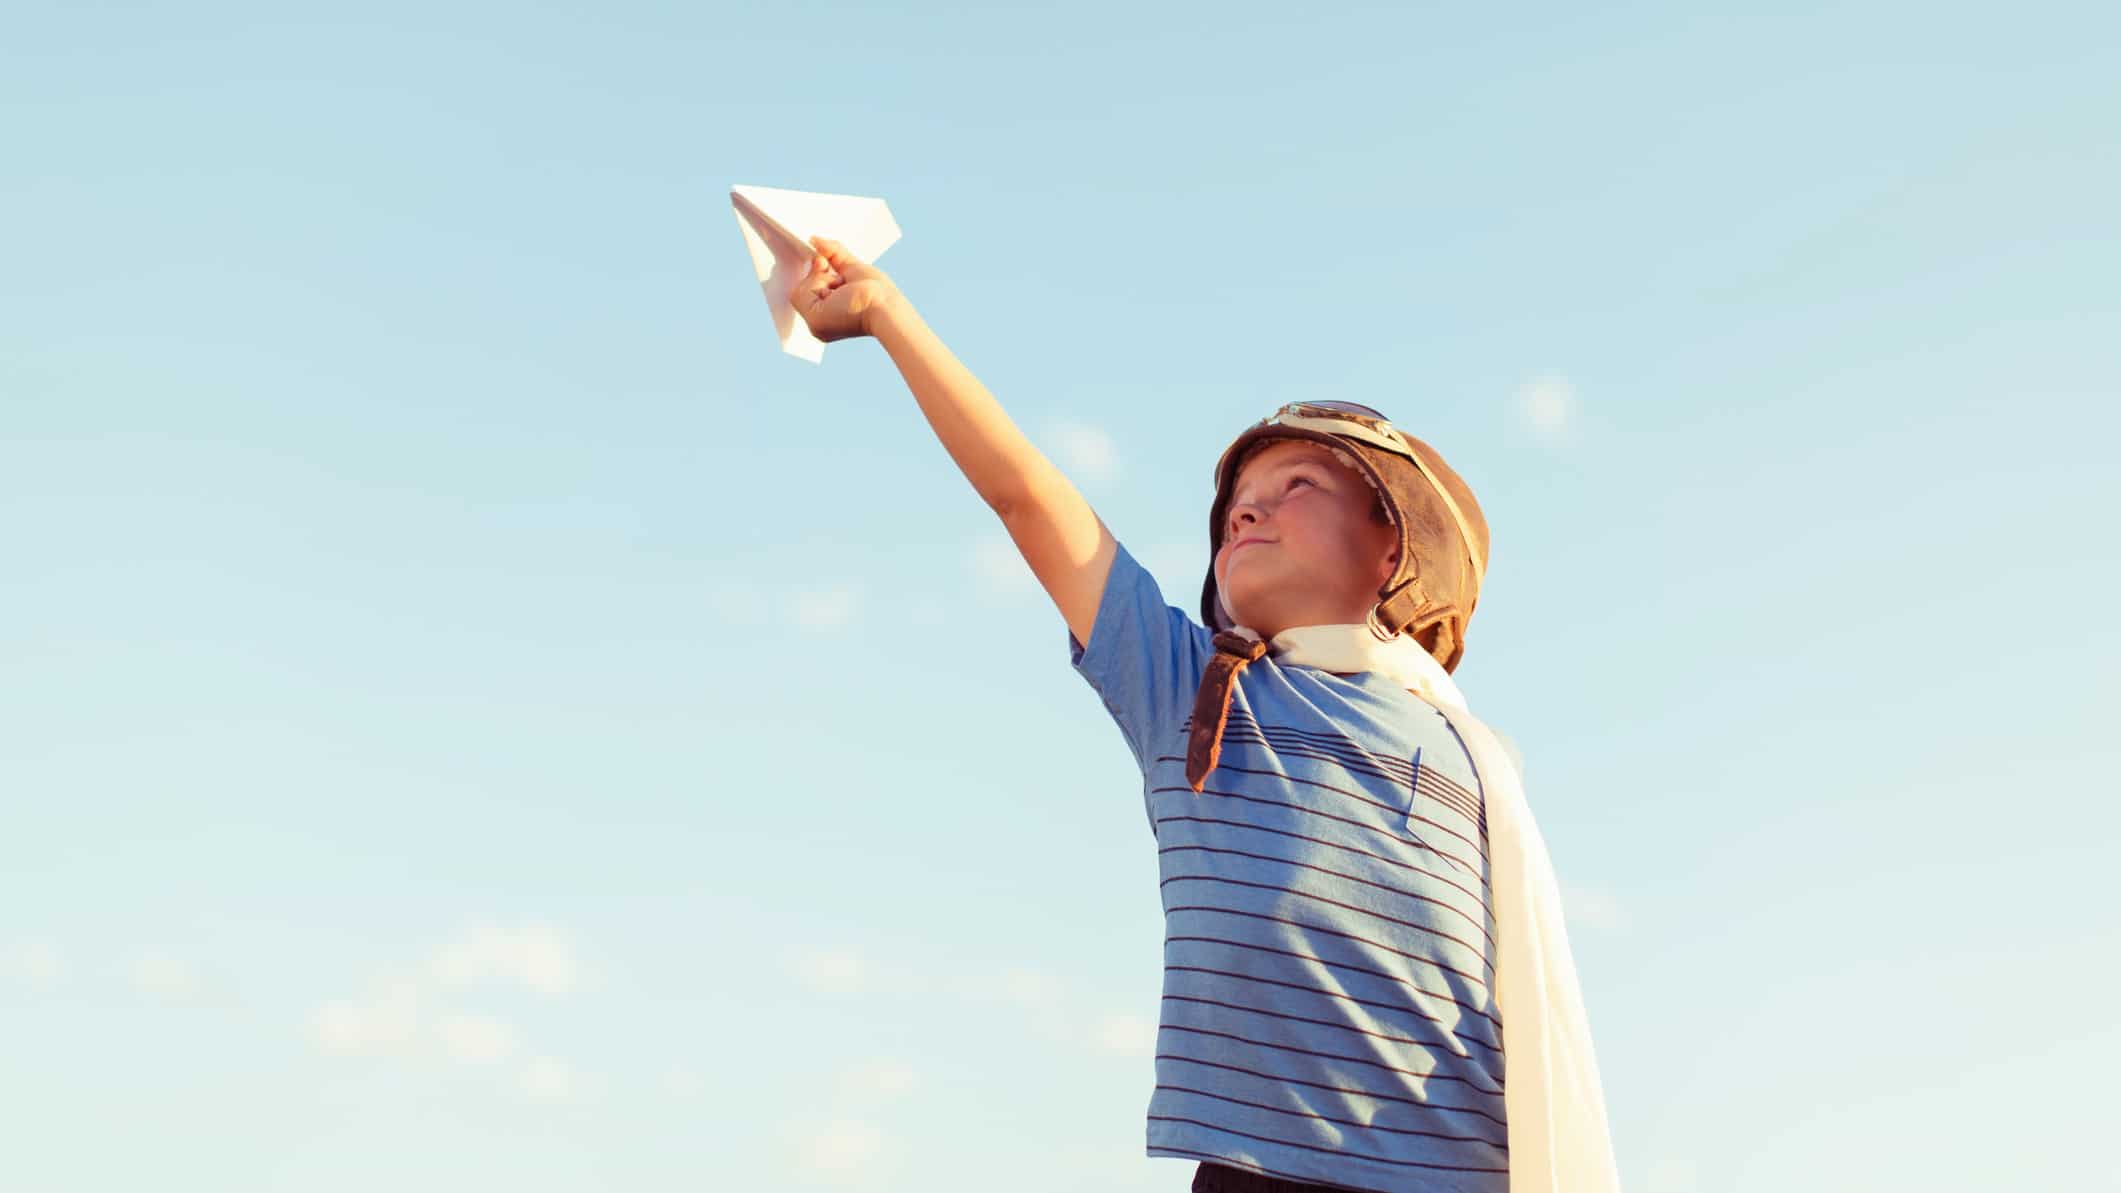 Playing paper. Мальчик с бумажным самолетиком. Запускает самолетик. Запускает бумажный самолетик. Запуск бумажных самолетиков.